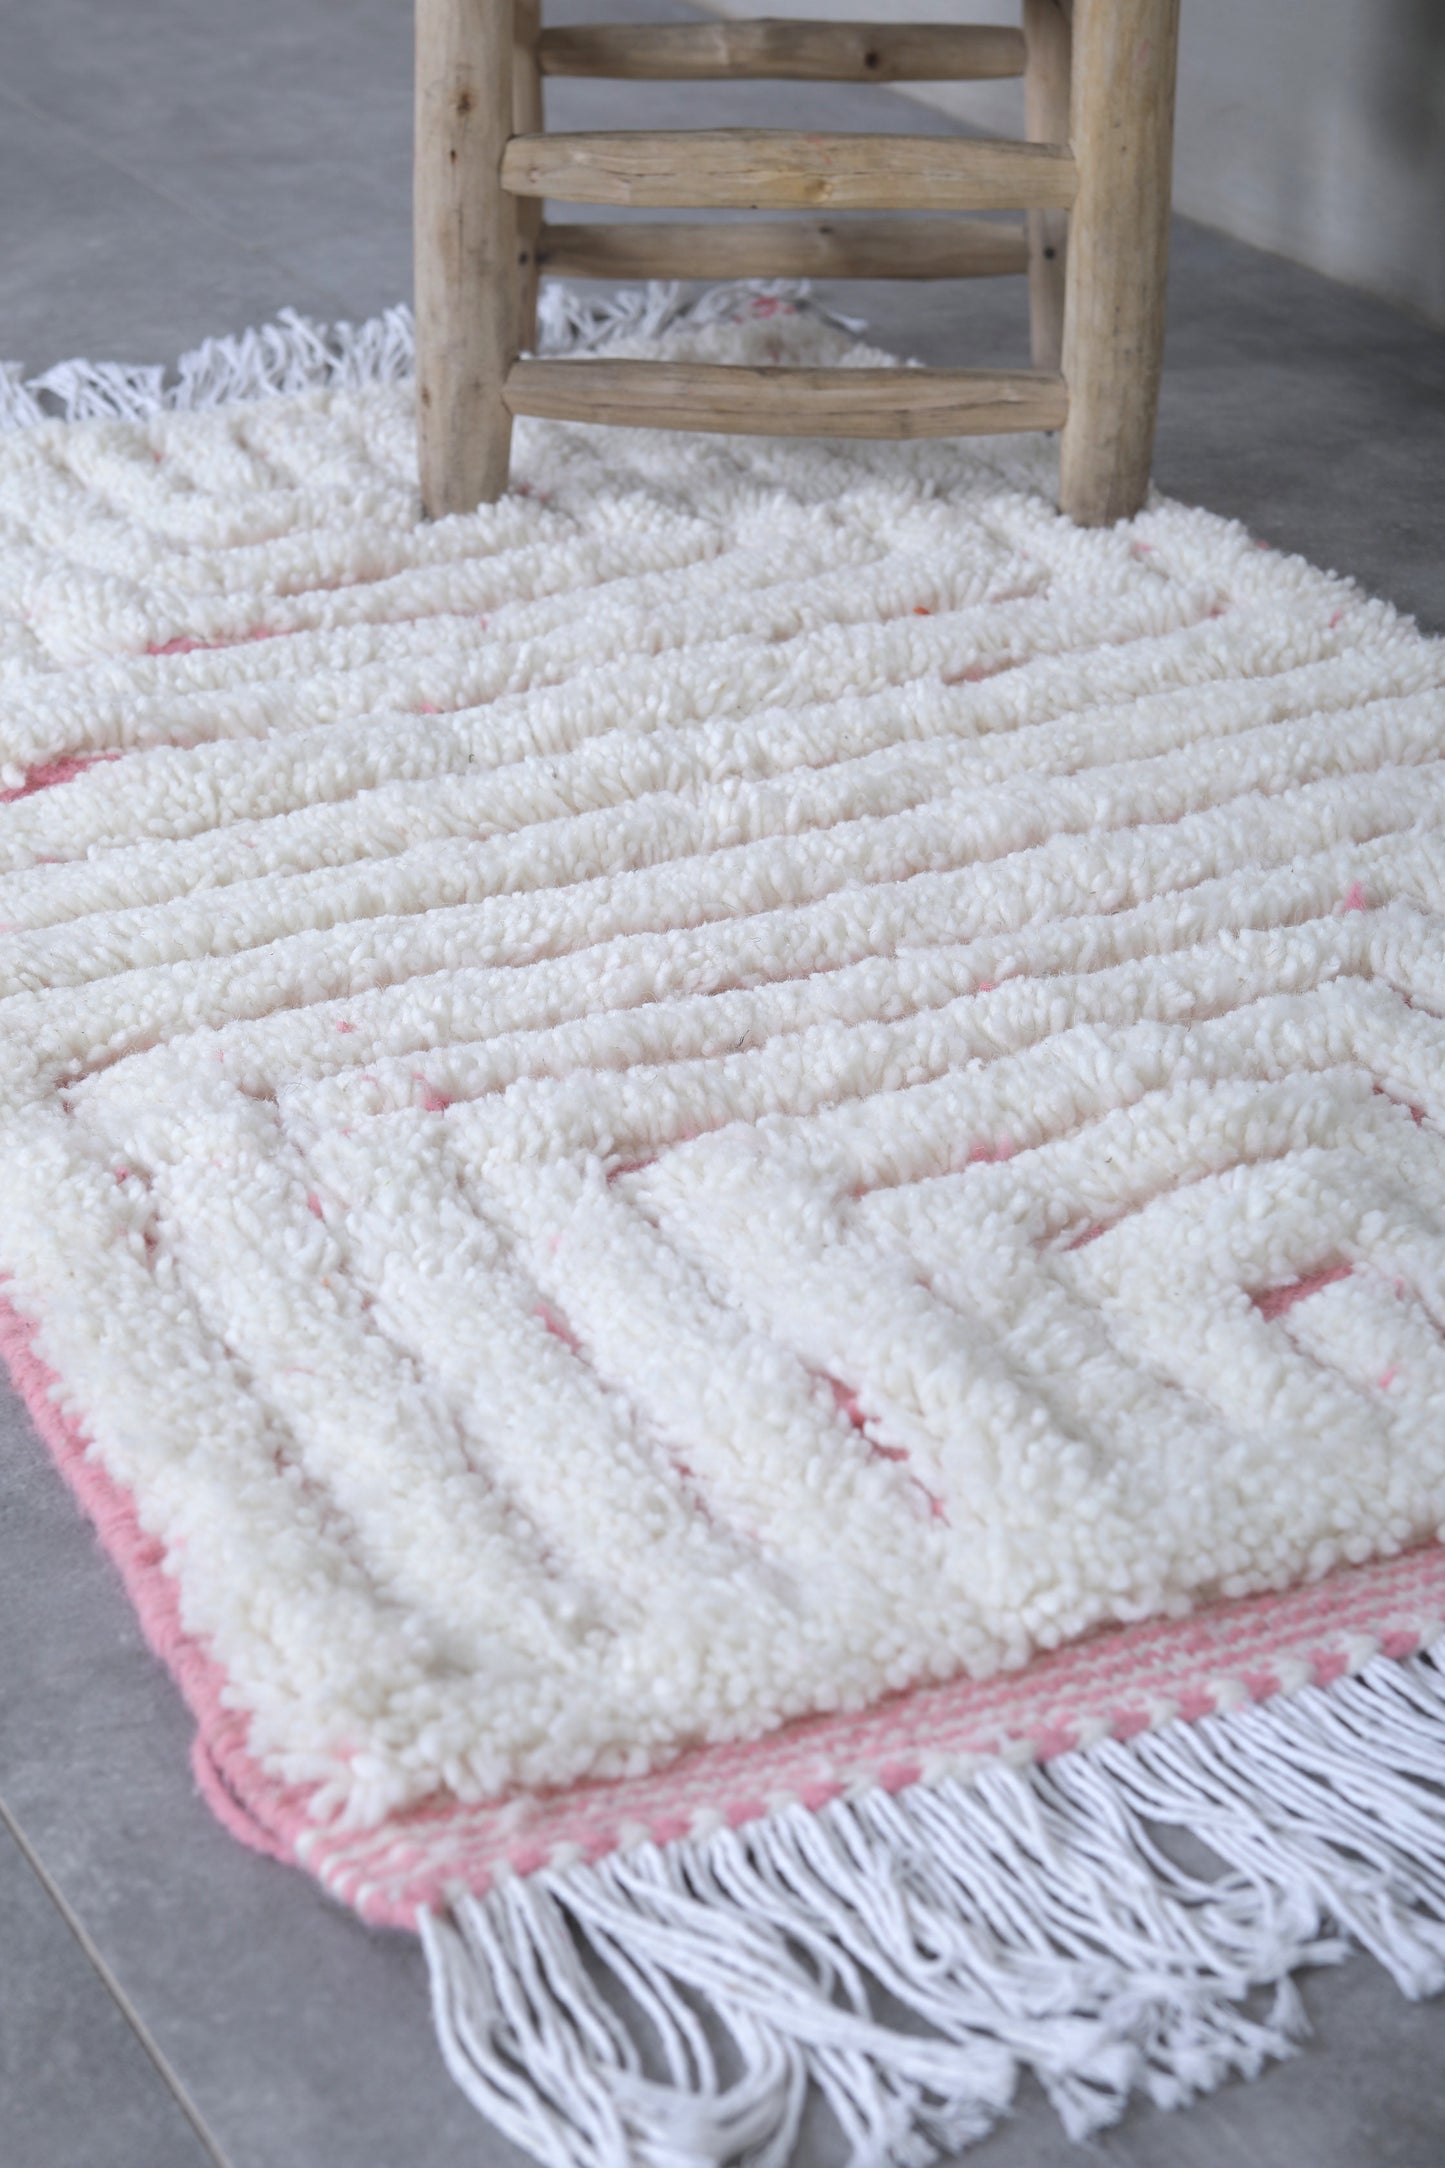 Moroccan rug 2.3 X 3.7 Feet - Beni ourain rugs